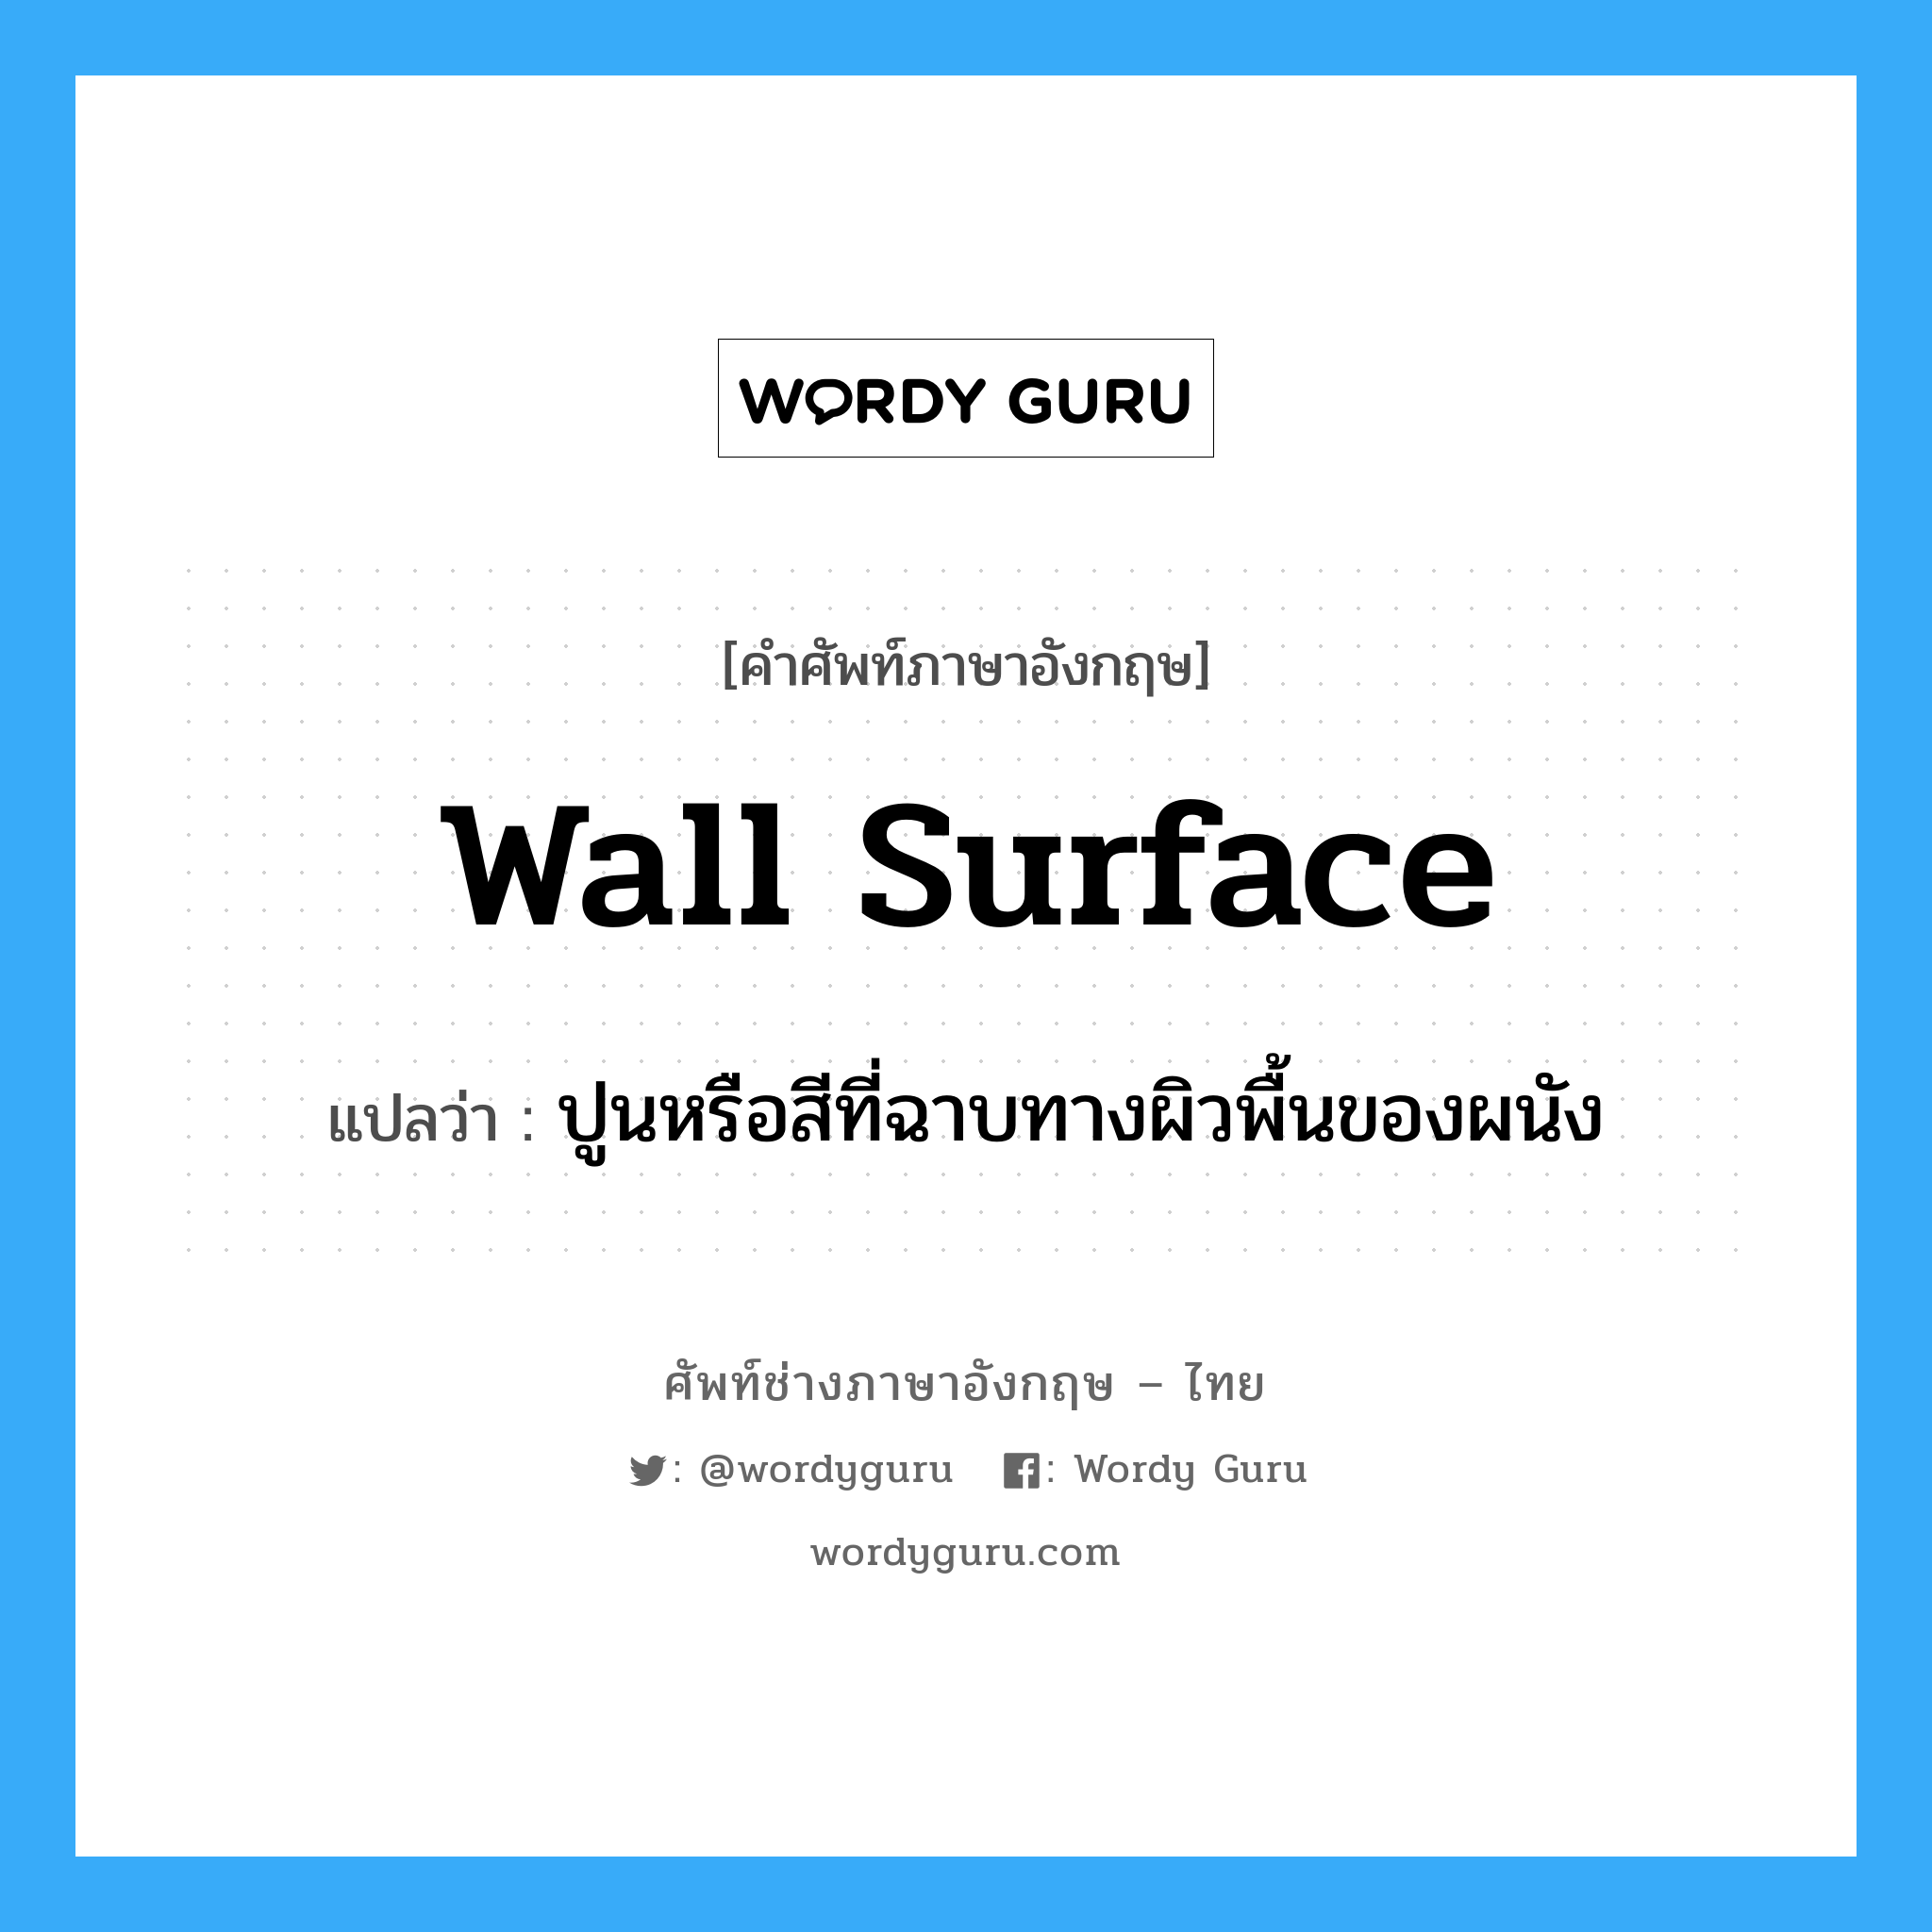 wall surface แปลว่า?, คำศัพท์ช่างภาษาอังกฤษ - ไทย wall surface คำศัพท์ภาษาอังกฤษ wall surface แปลว่า ปูนหรือสีที่ฉาบทางผิวพื้นของผนัง